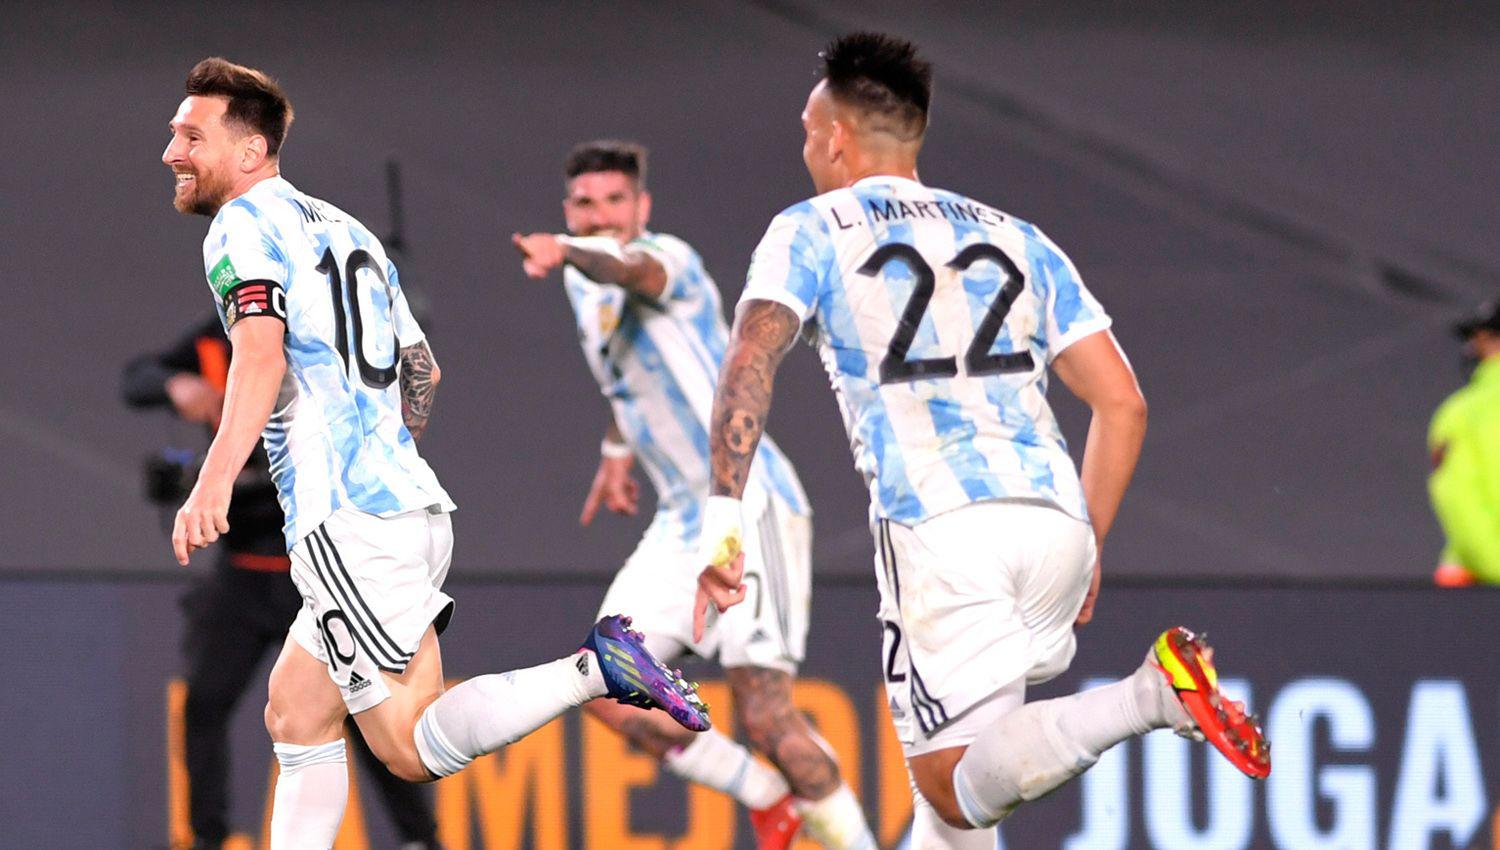 La Argentina hizo un partido perfecto Messi fue de lo mejor y goleoacute por 3 a 0